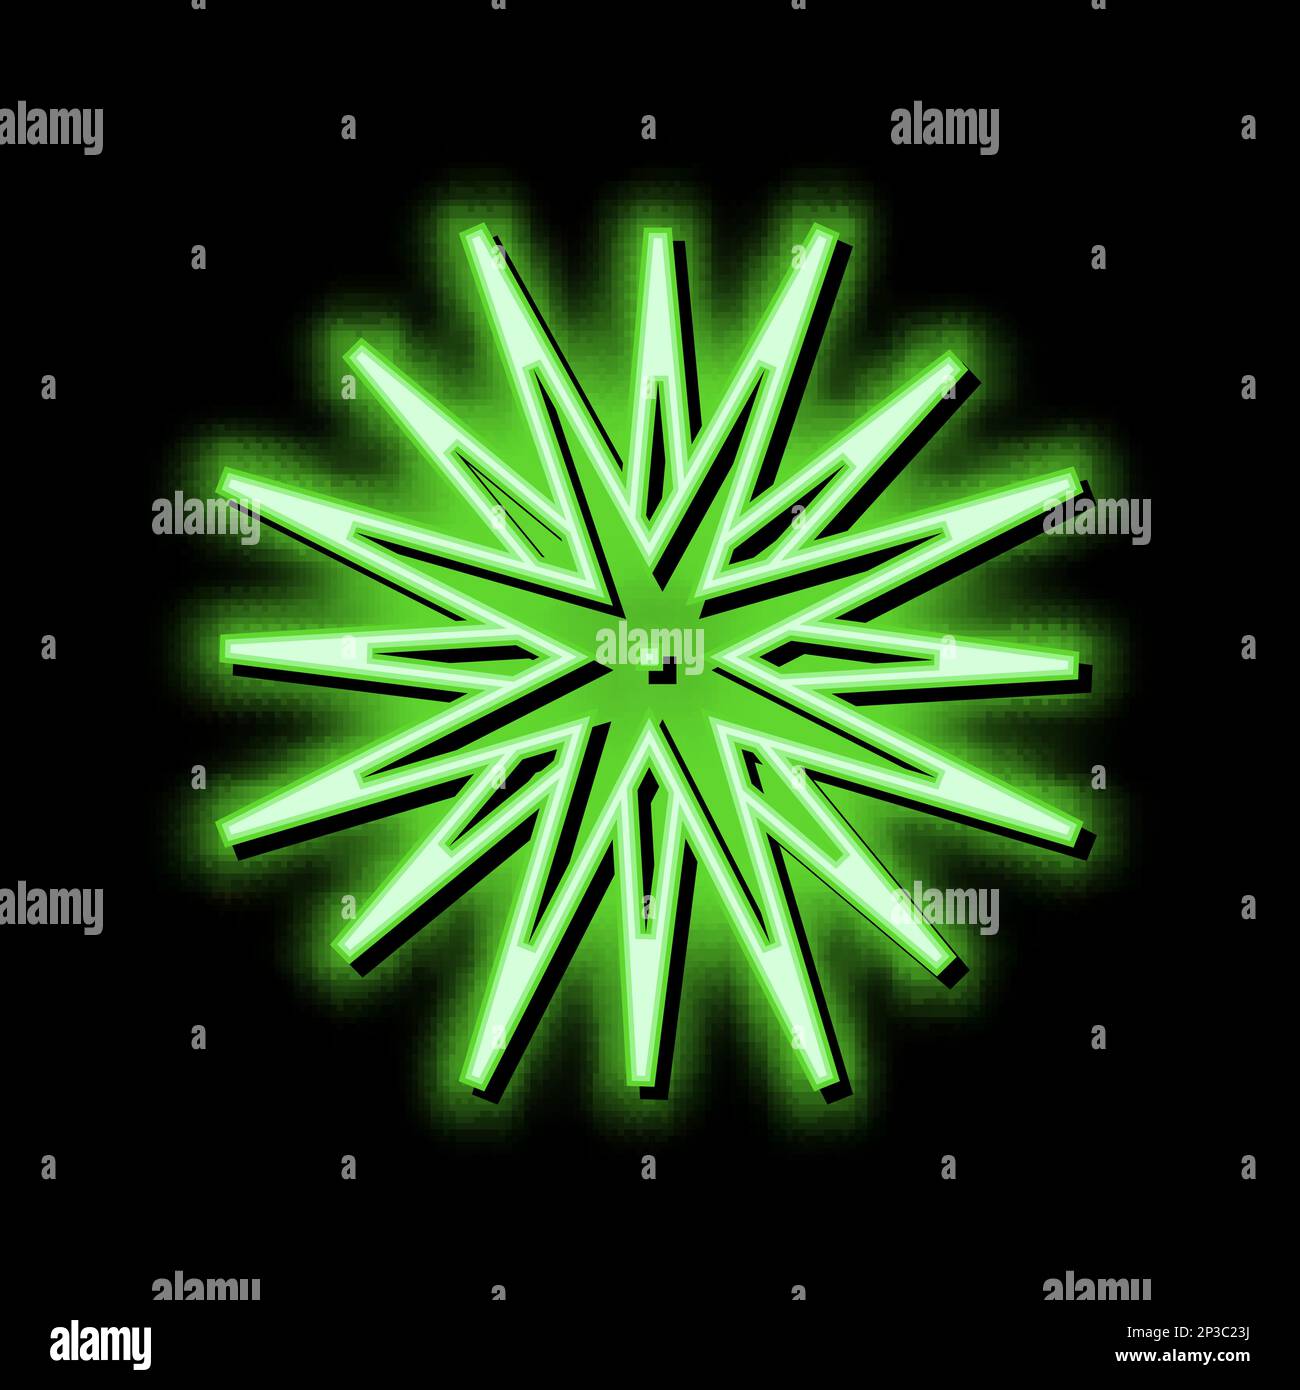 sea urchin neon glow icon illustration Stock Vector